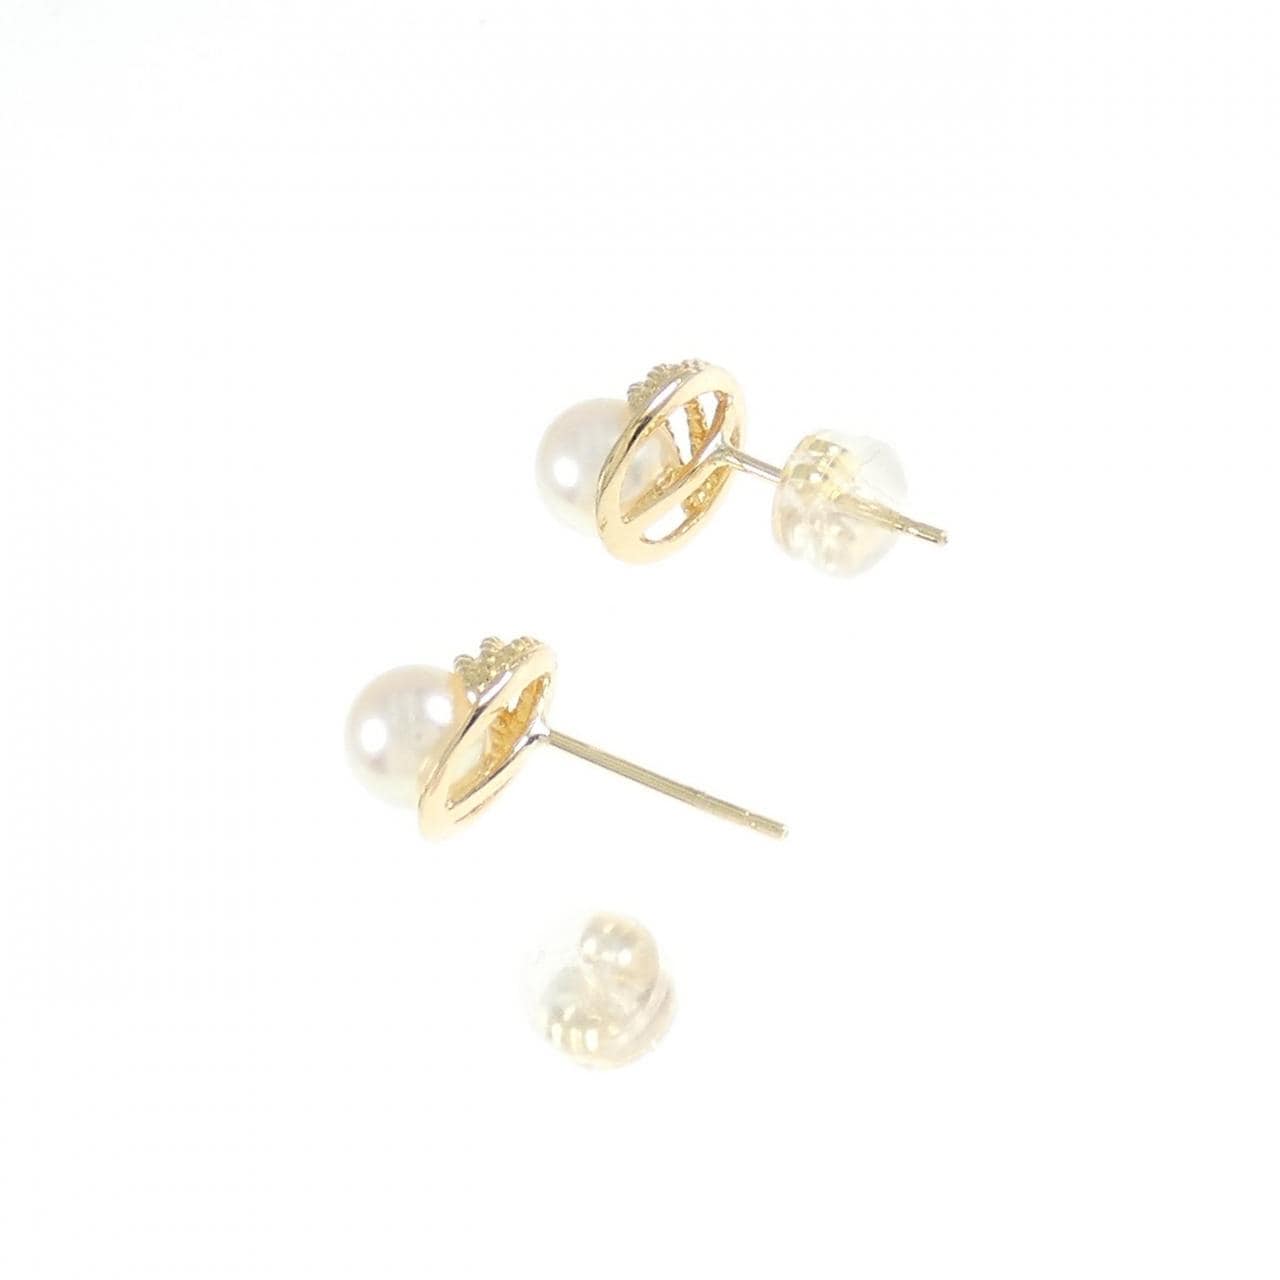 K18YG Akoya pearl earrings 5.7mm